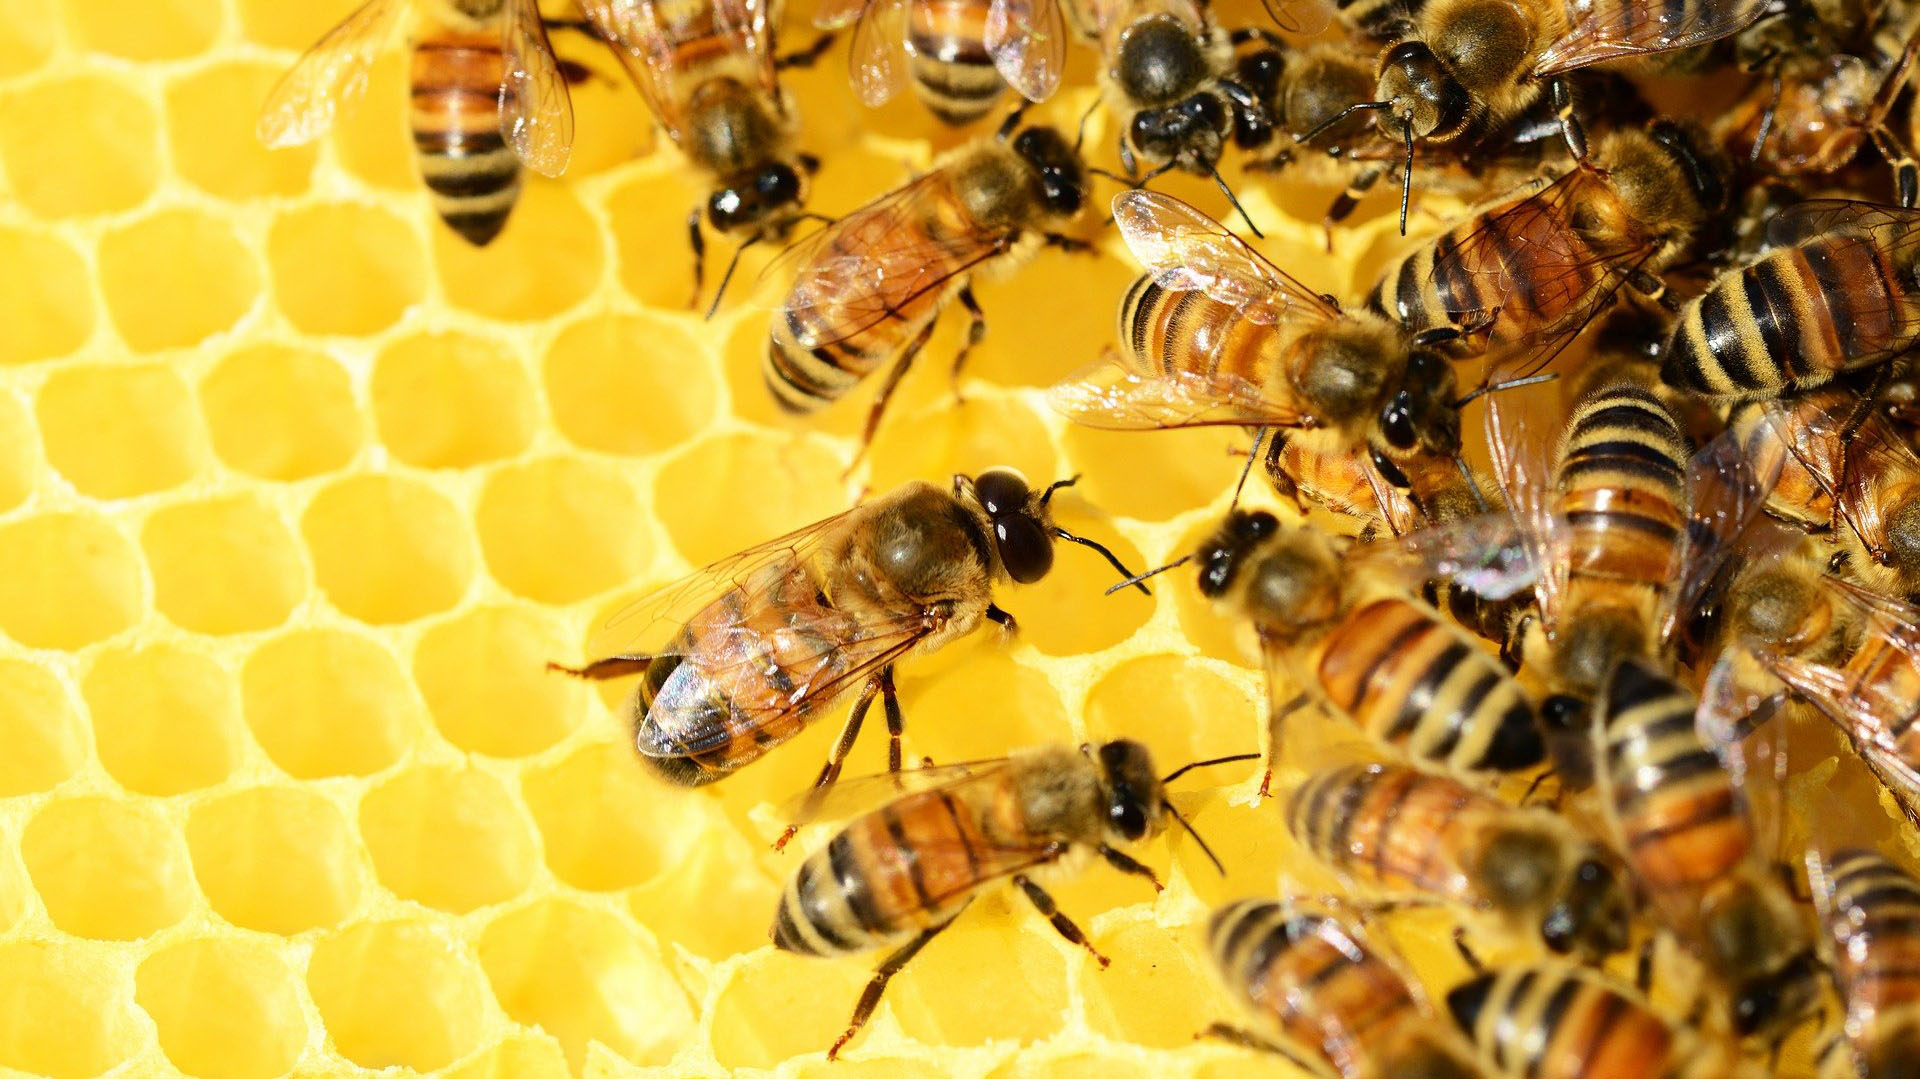 Soja y maíz versus miel: las abejas están amenazadas por los agroquímicos